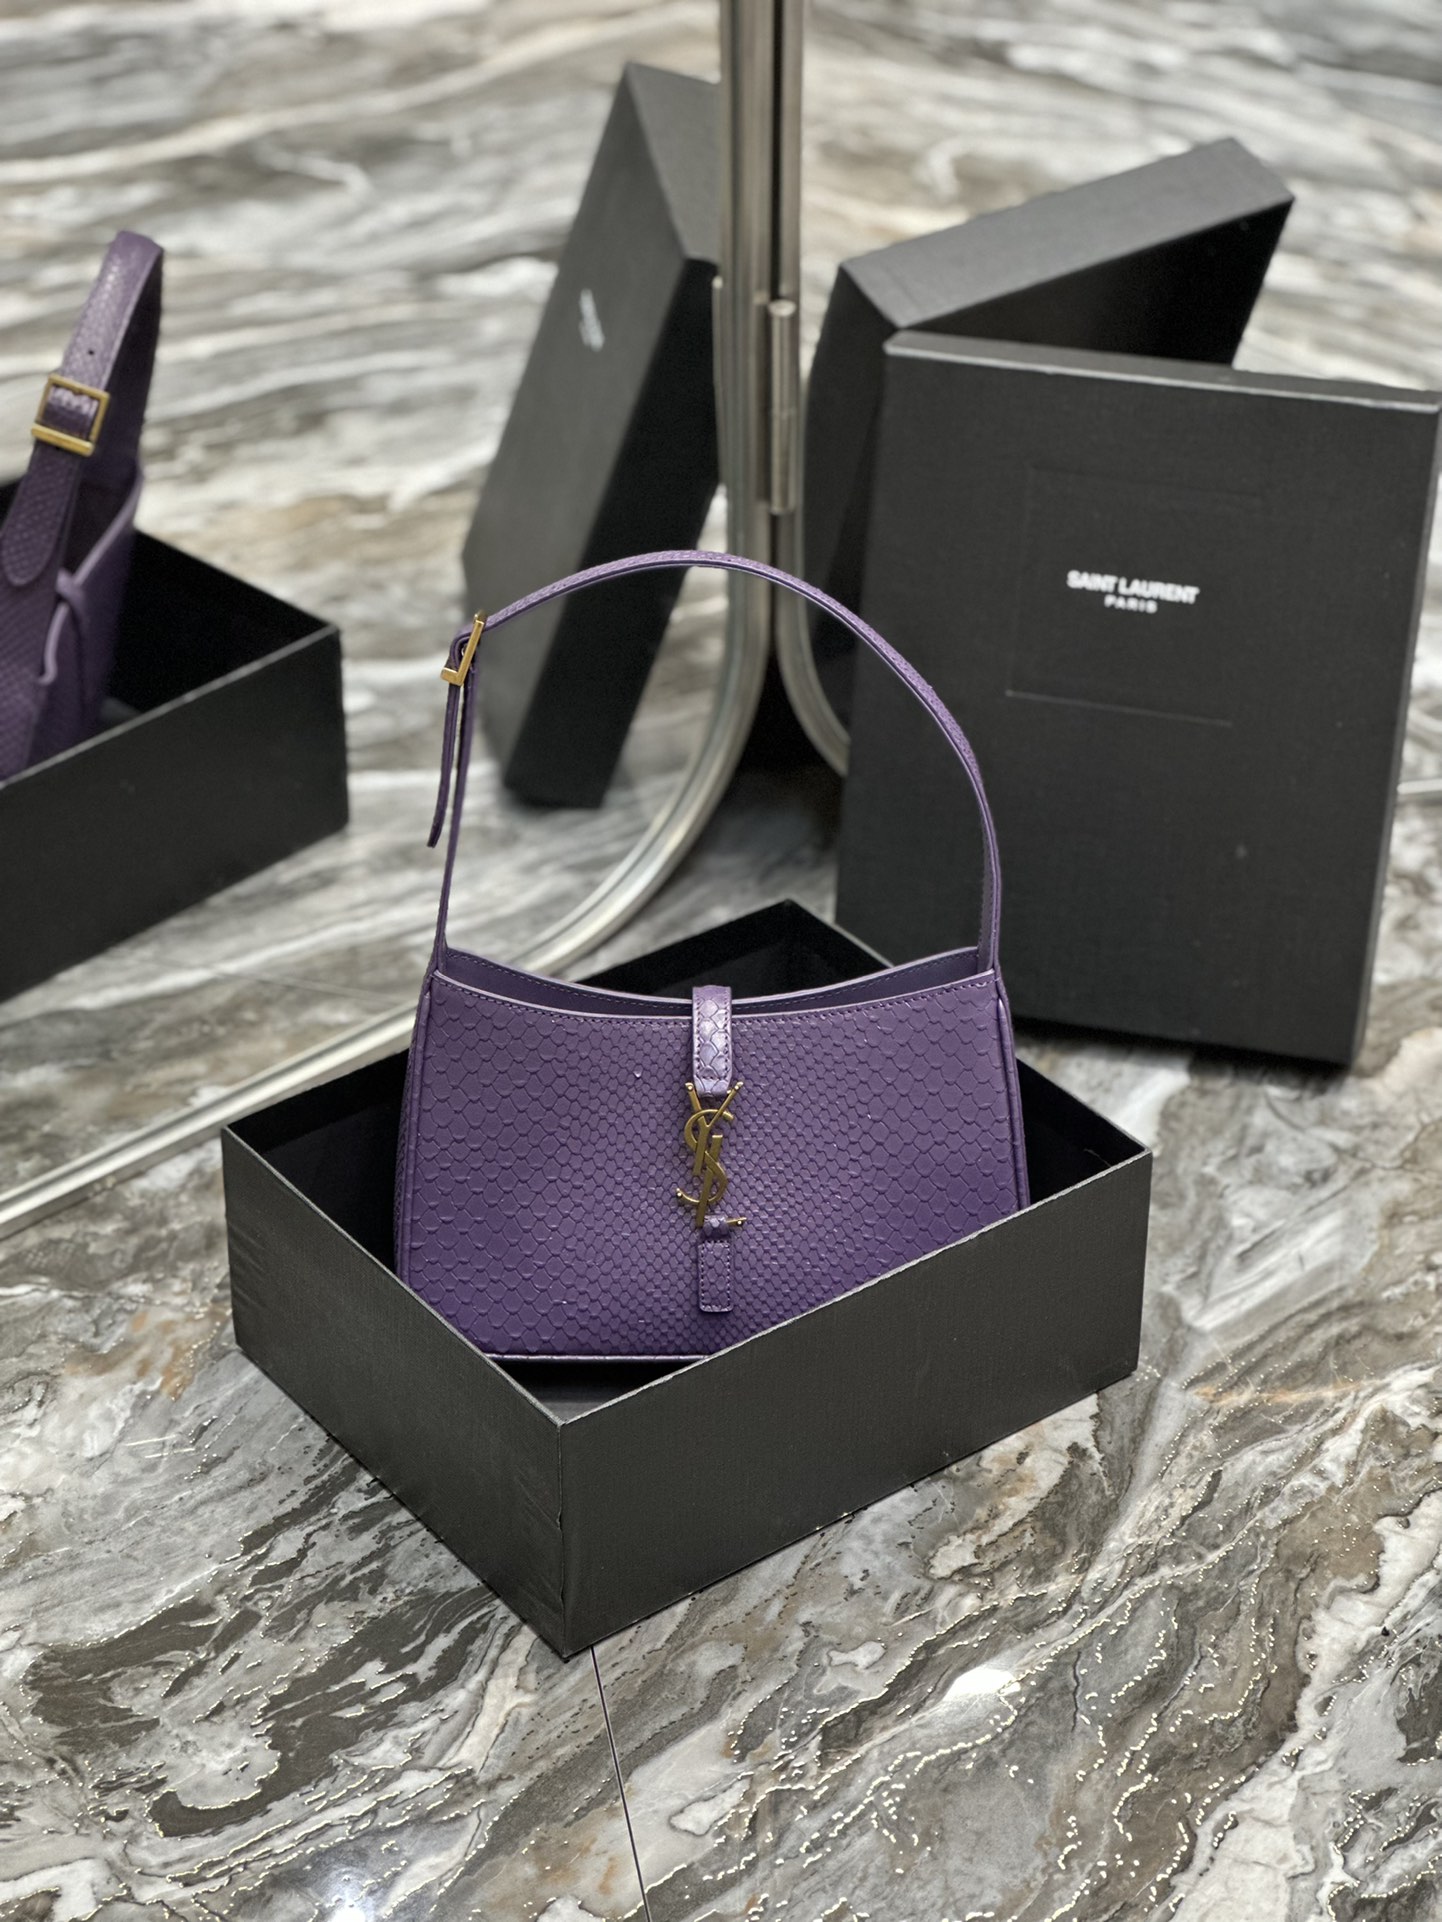 原厂皮紫色蛇纹牛皮_腋下包Le5A7Bag强推️今年的宝藏包包之一！极简外形+金属logo扣开合设计可调